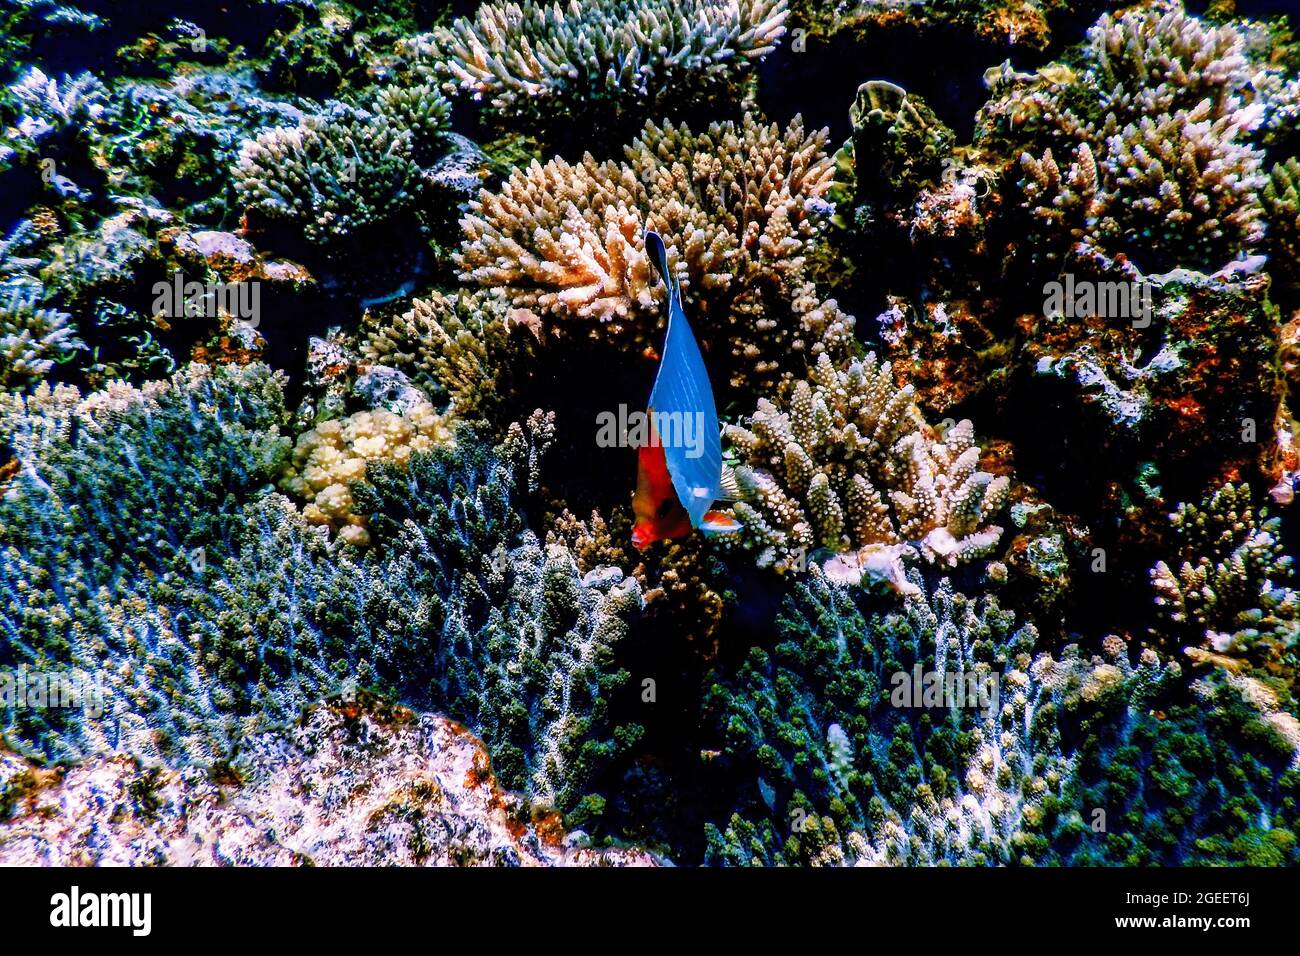 Hahnenfisch (Chaetodon Larvatus) Korallenfisch, tropische Gewässer, Meeresleben Stockfoto